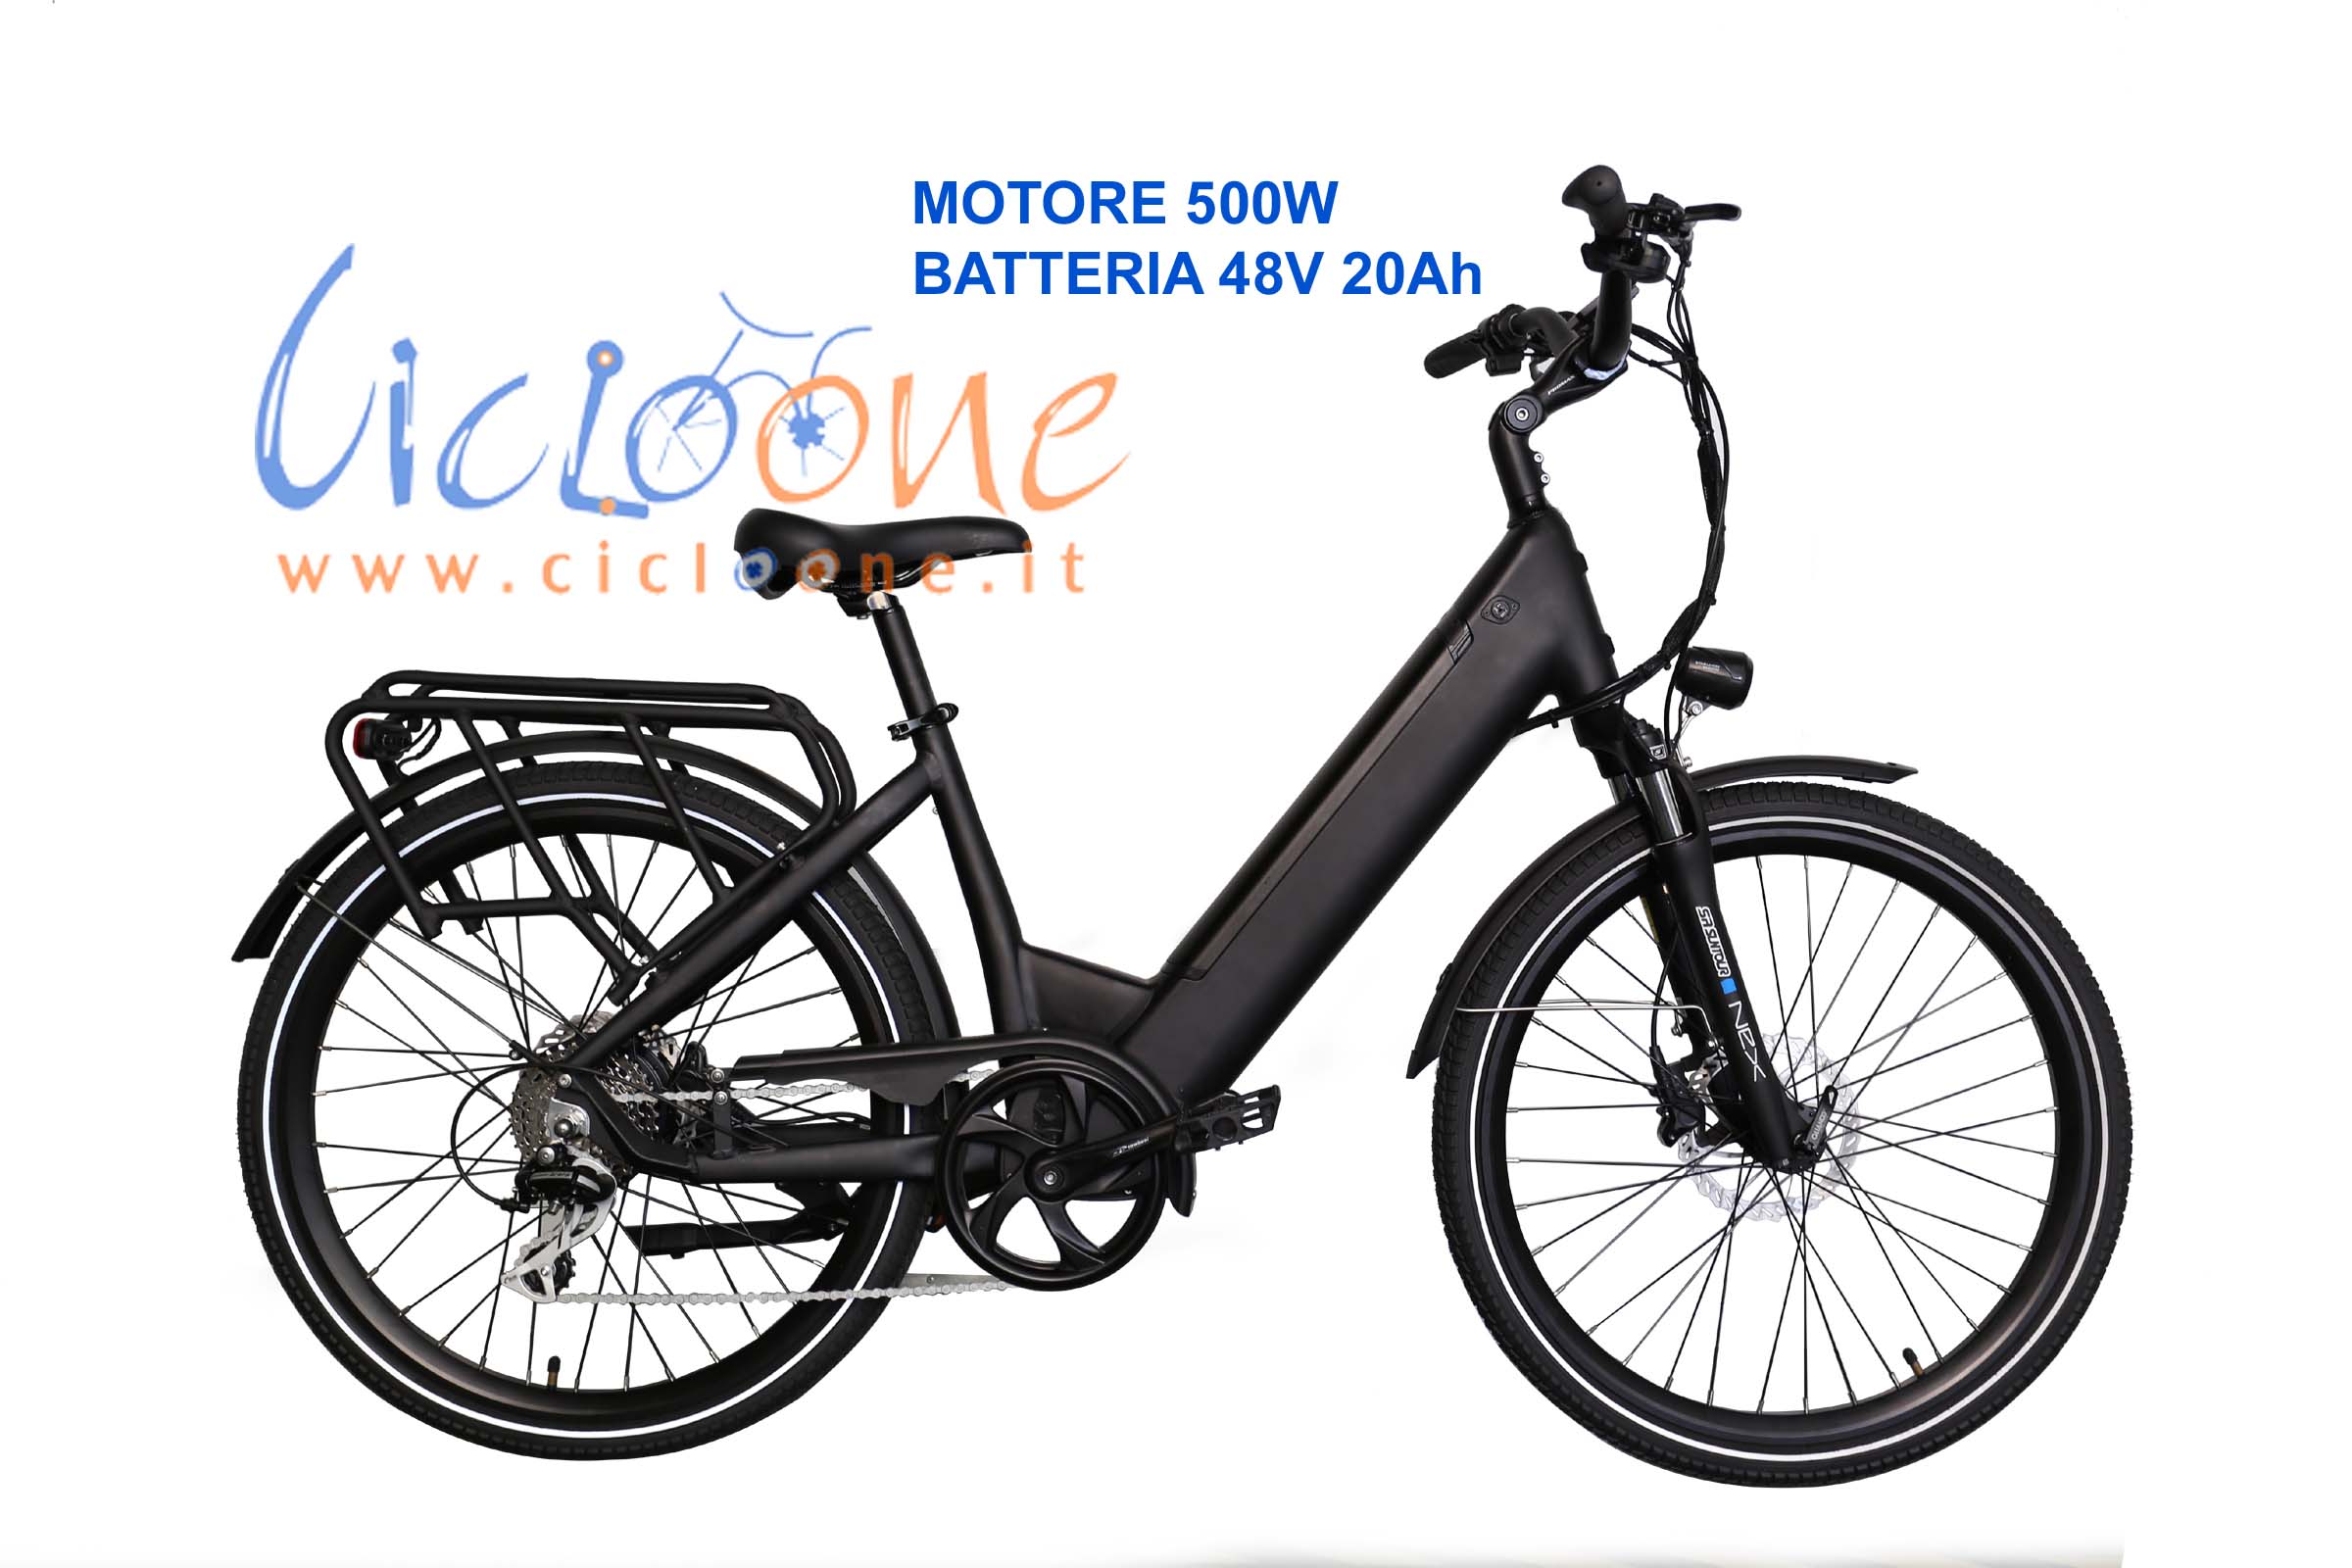 Bici elettrica motore 500W telaio nero